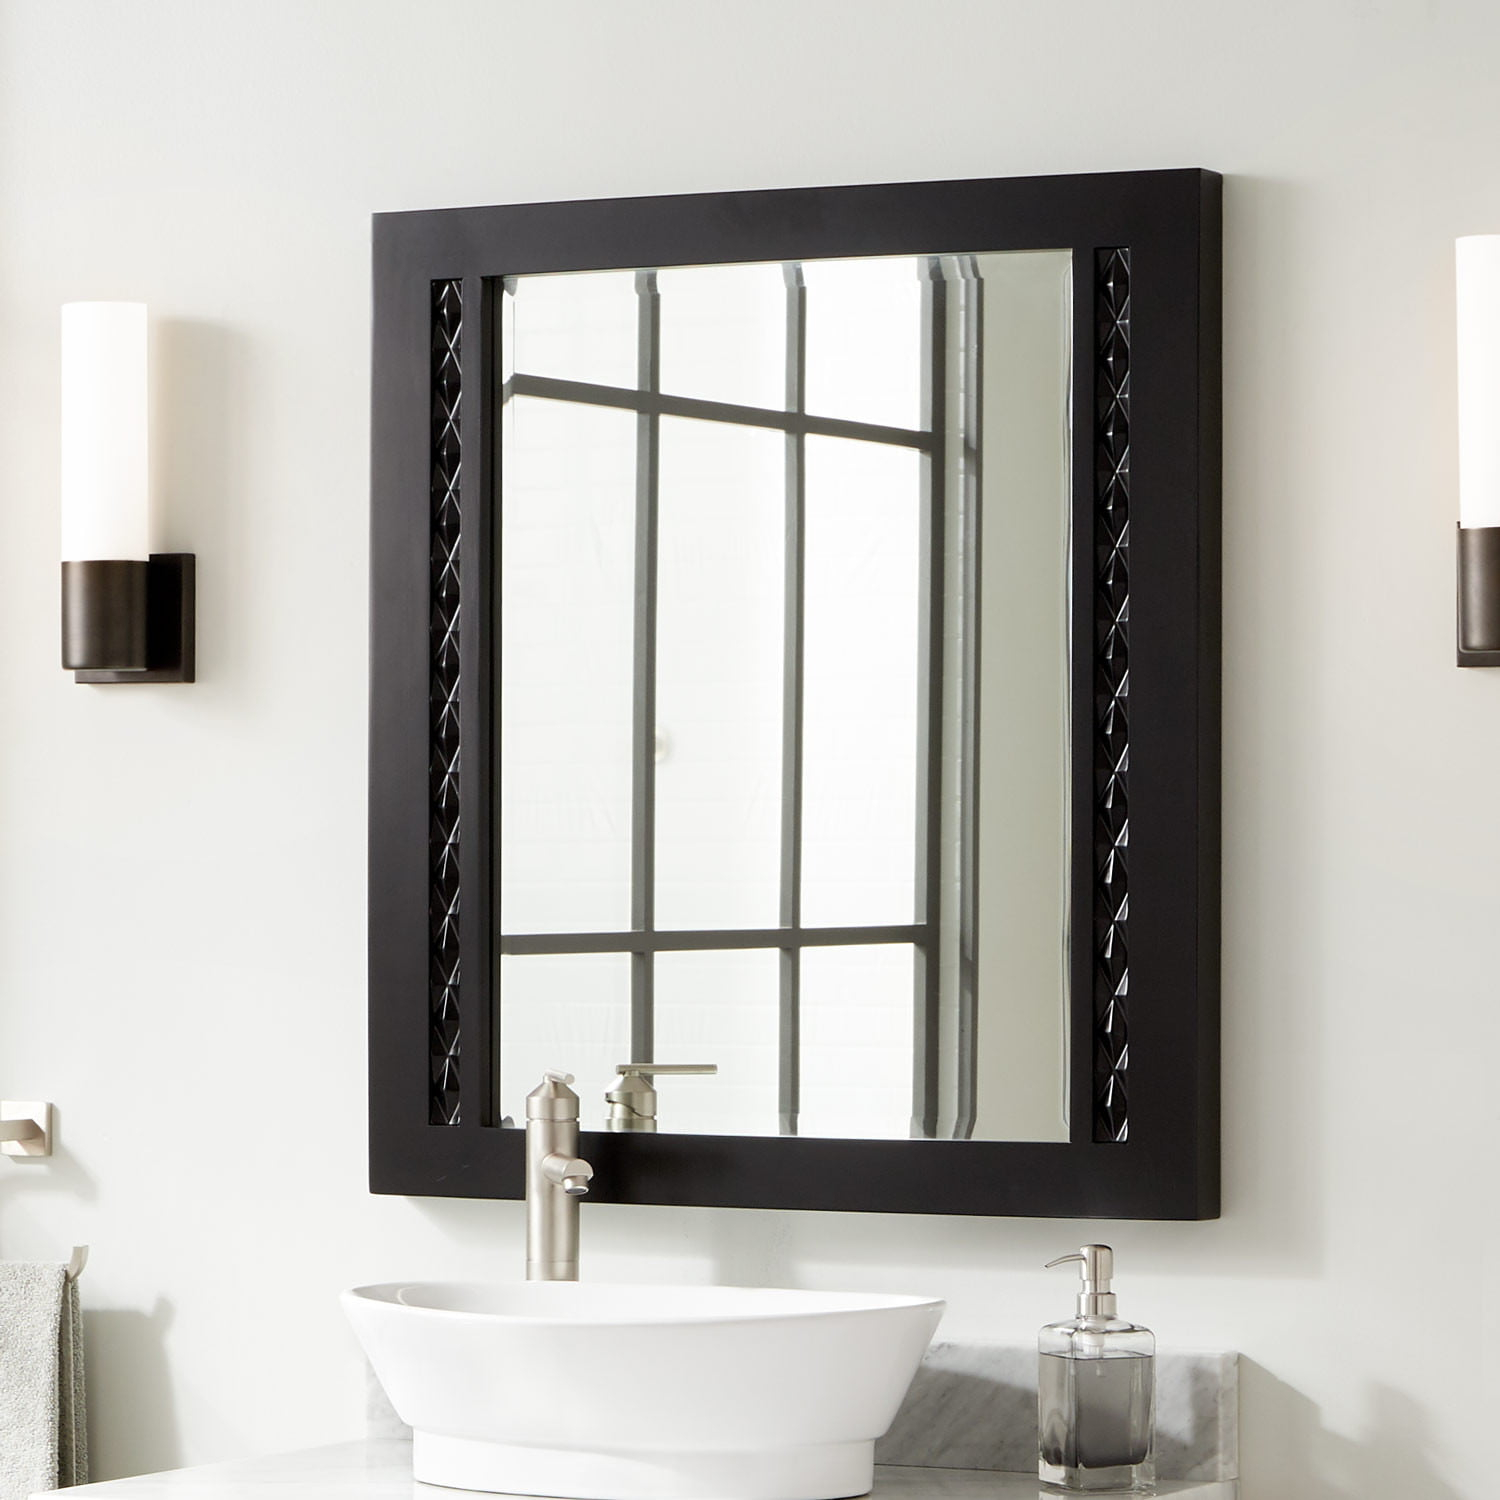 Black Framed Mirrors For Bathroom • Bathtub Ideas 